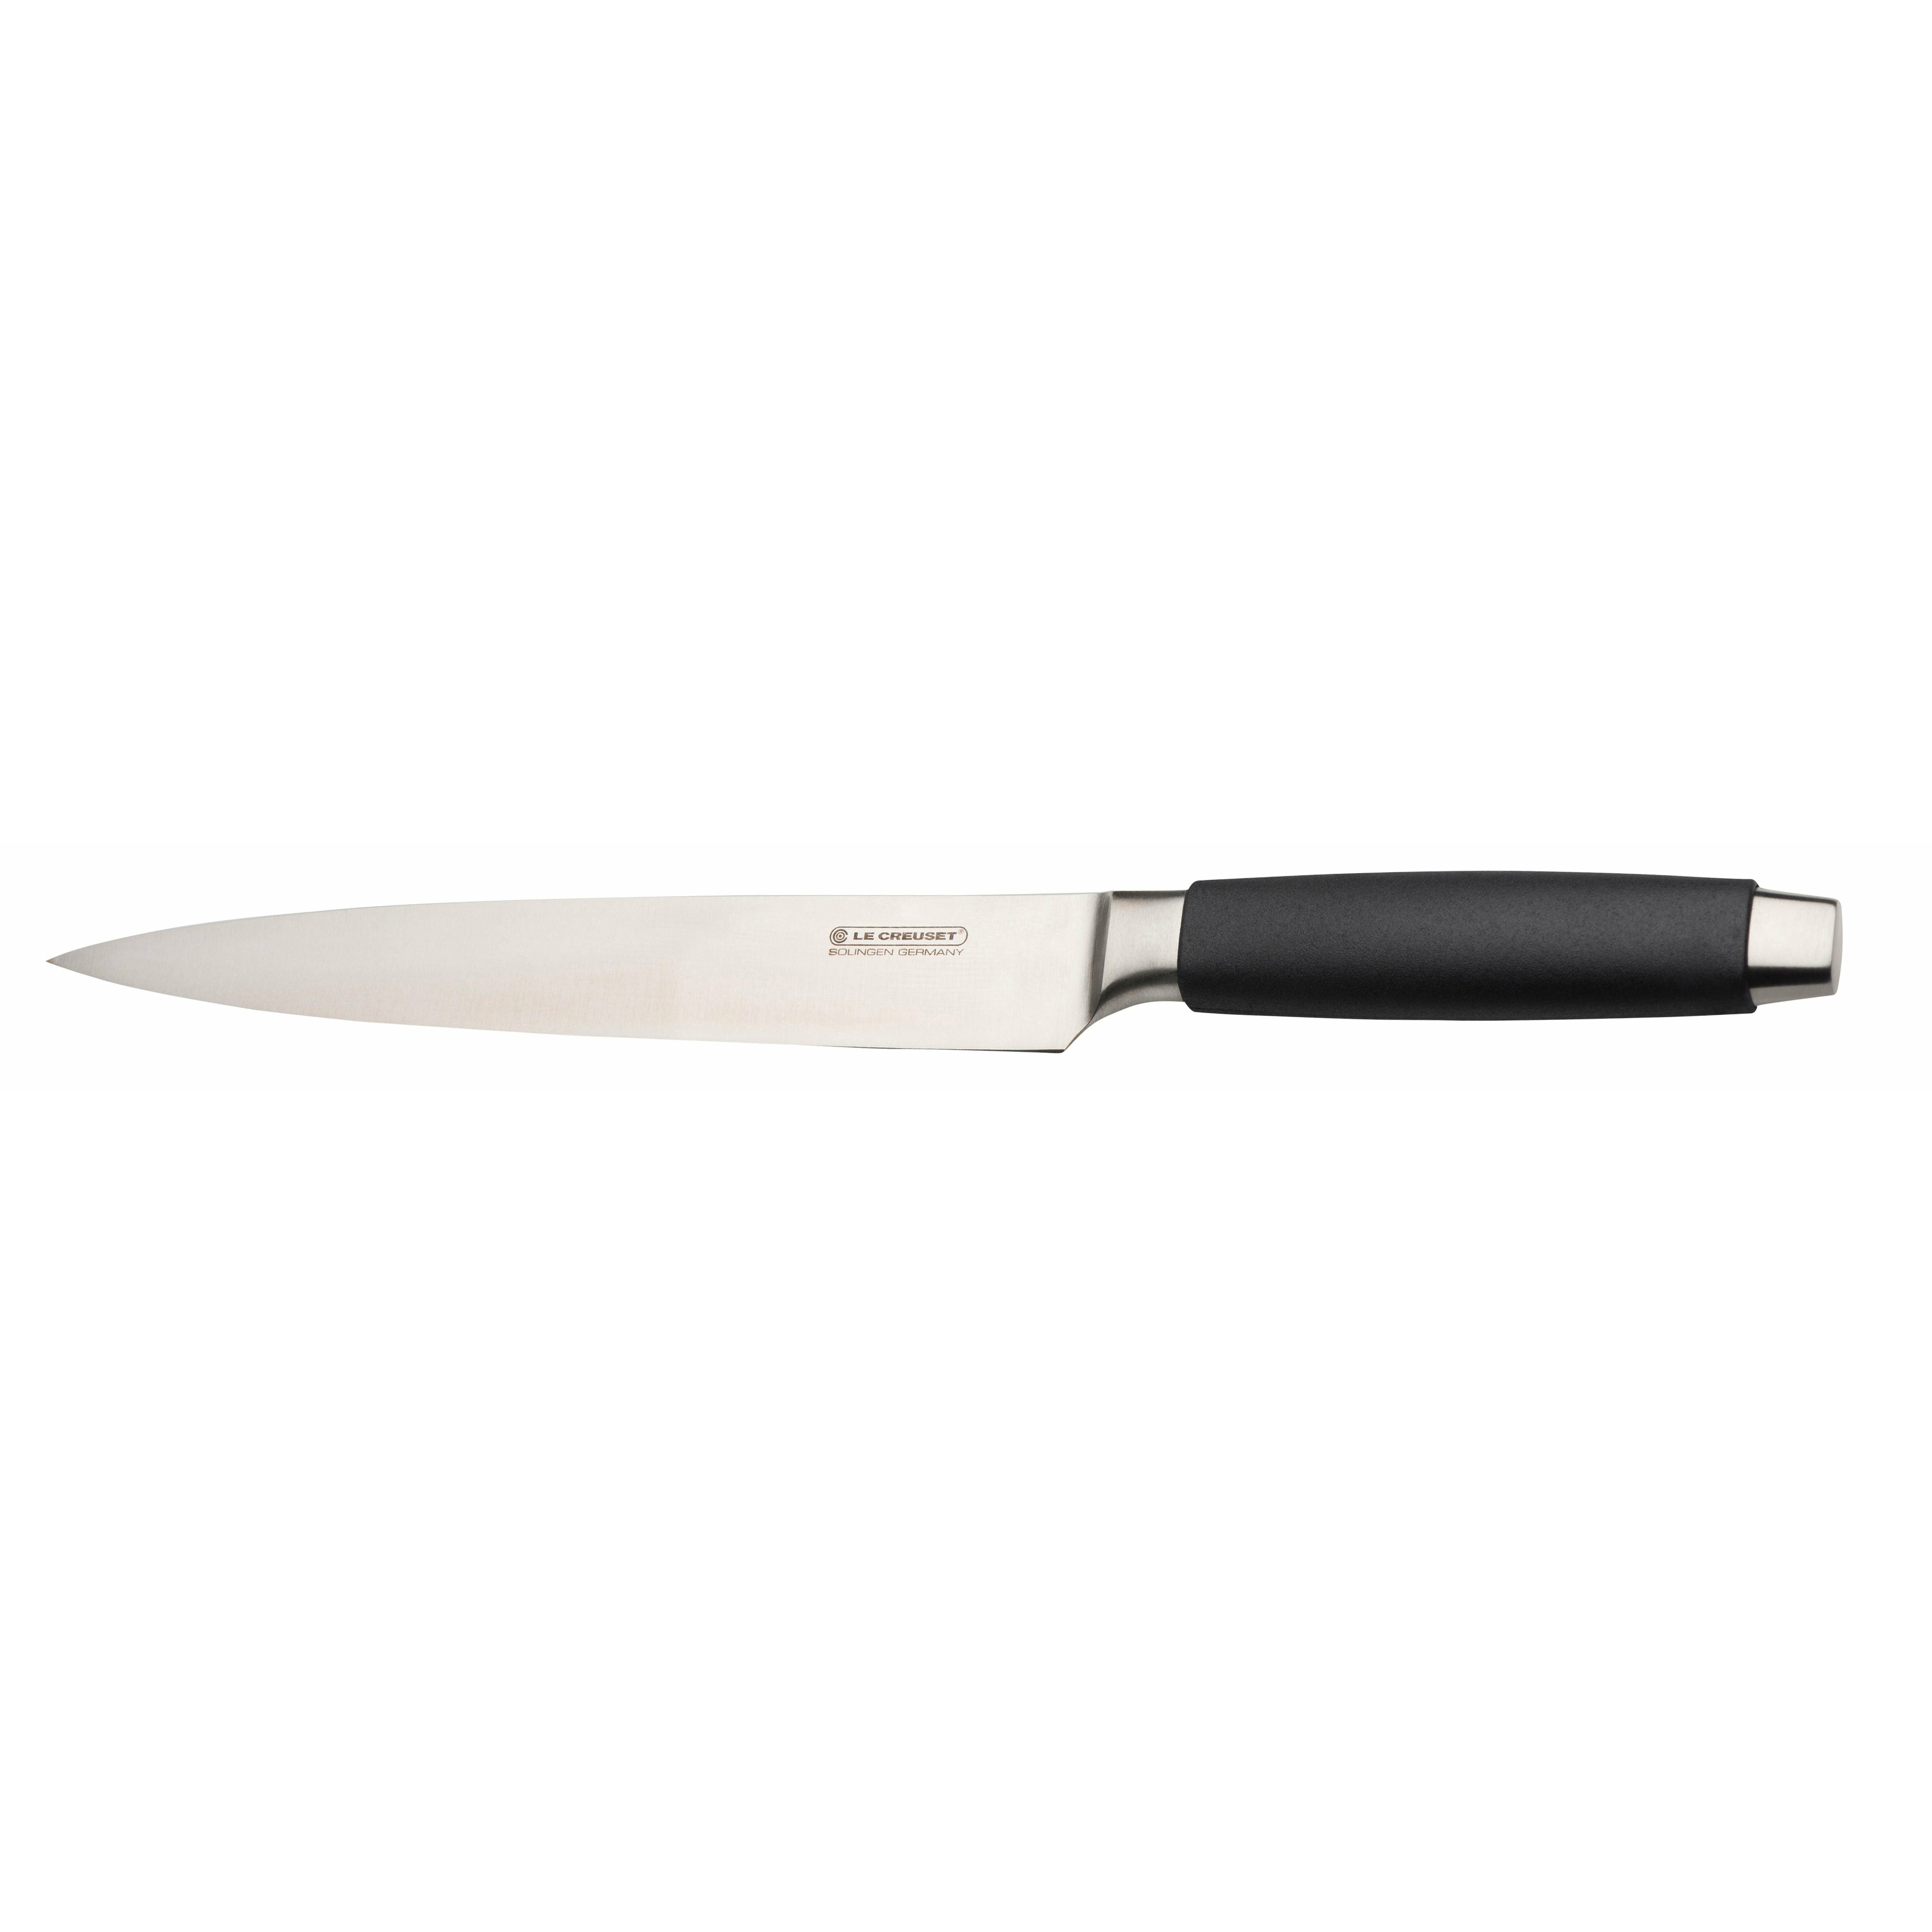 Le Creuset Skinke knivstandard med sort håndtag, 20 cm